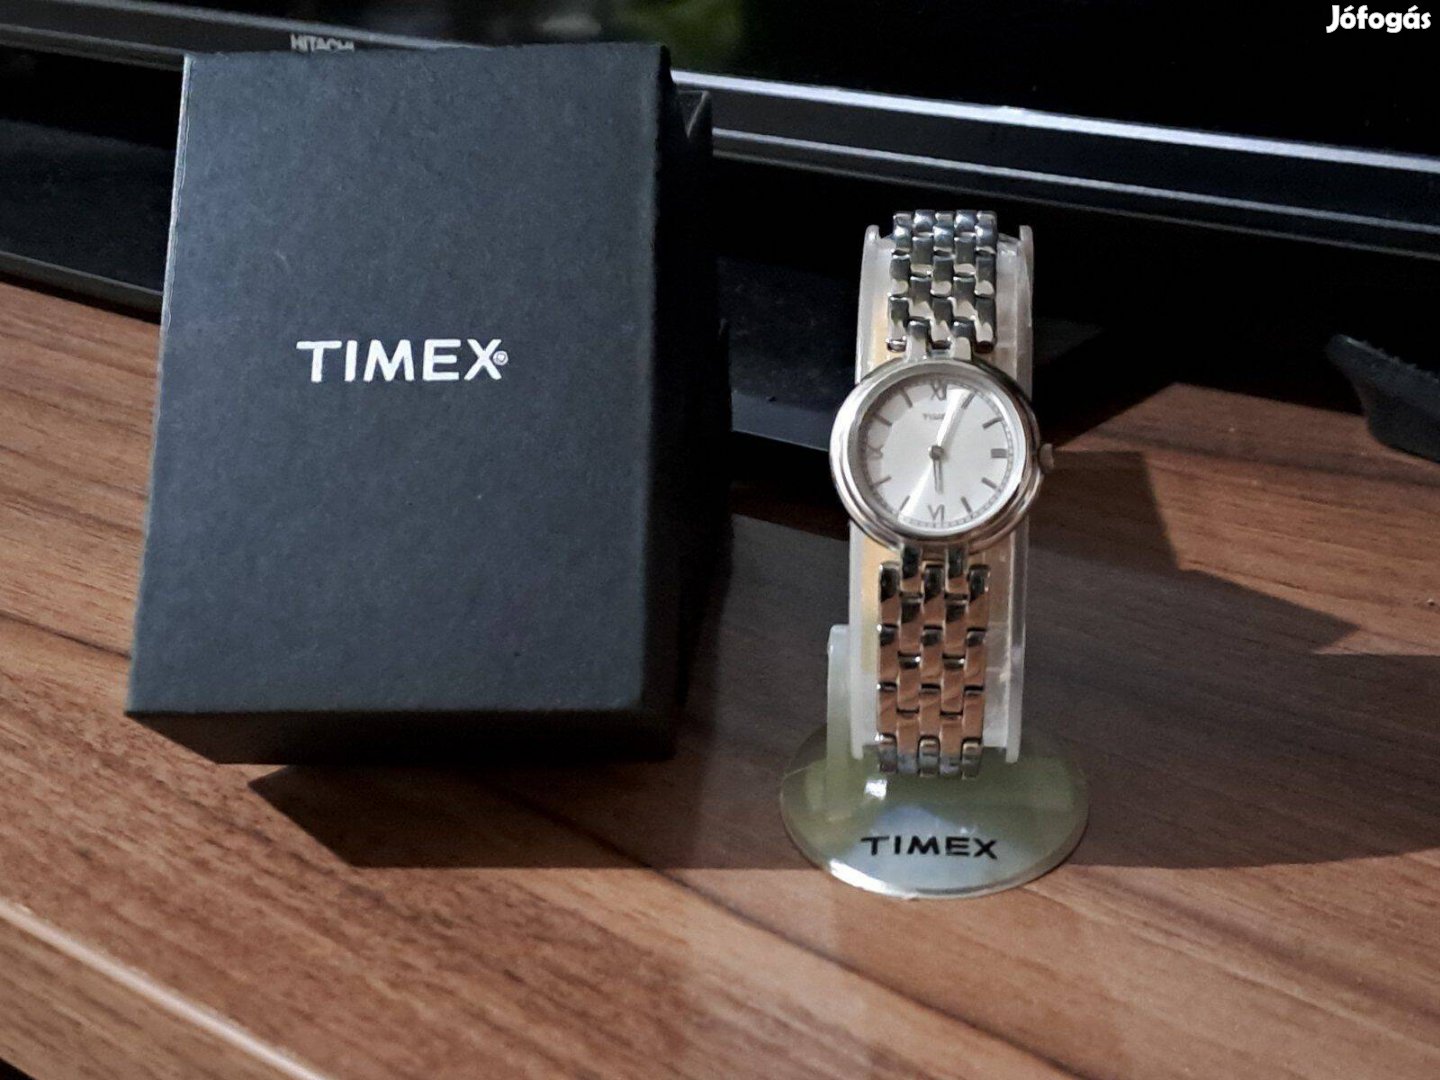 Timex W92 női karóra gyári csomagolásban